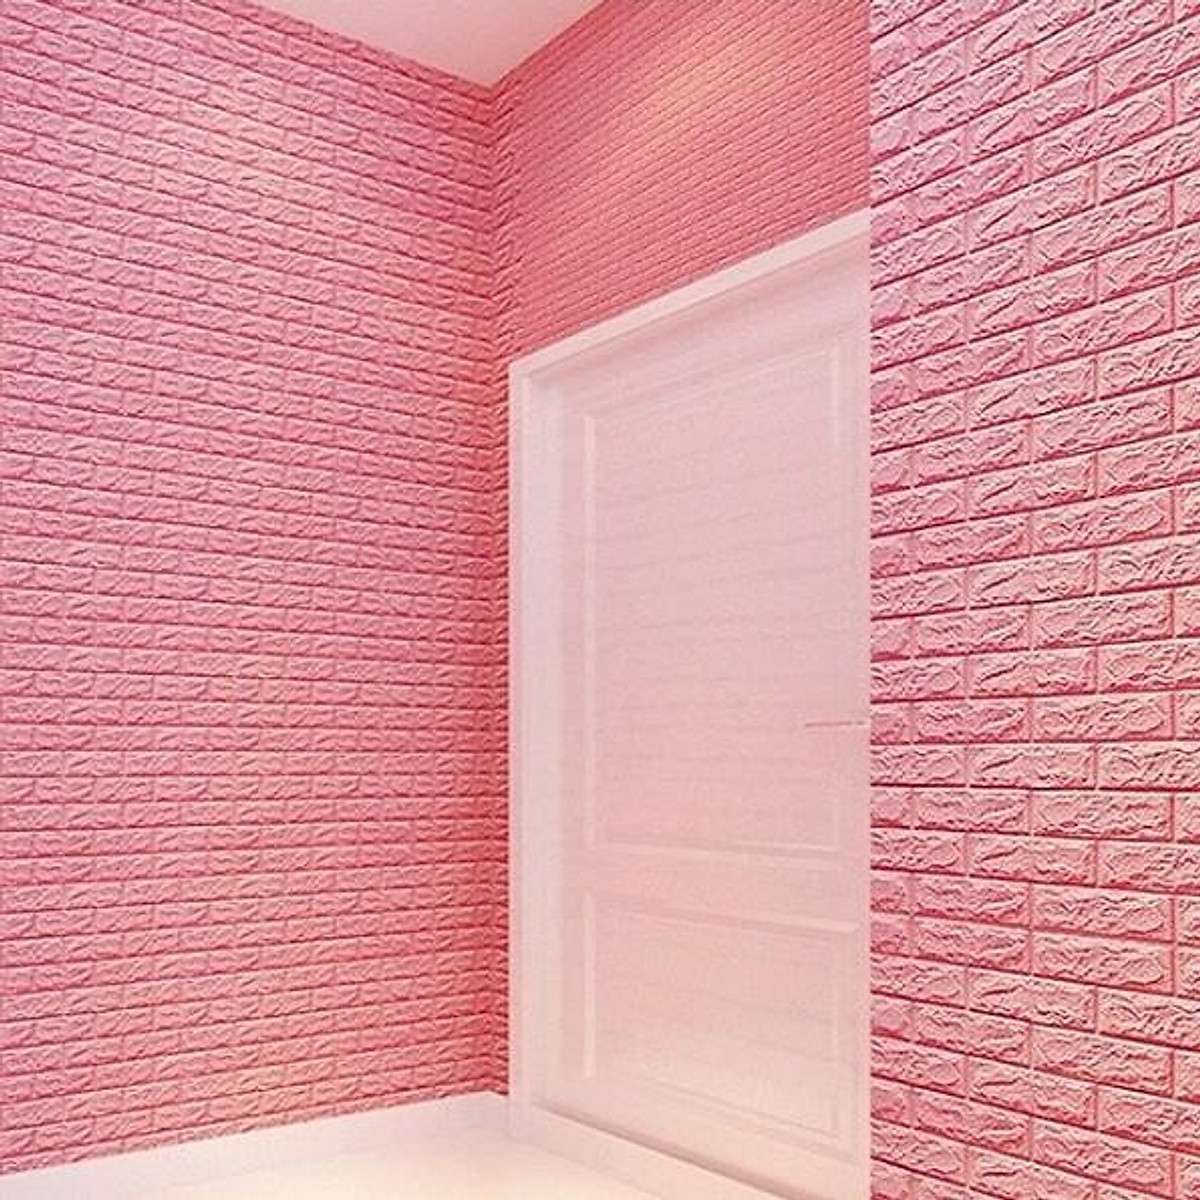 Mẫu giấy dán tường giả gạch bằng xốp màu hồng thơ mộng